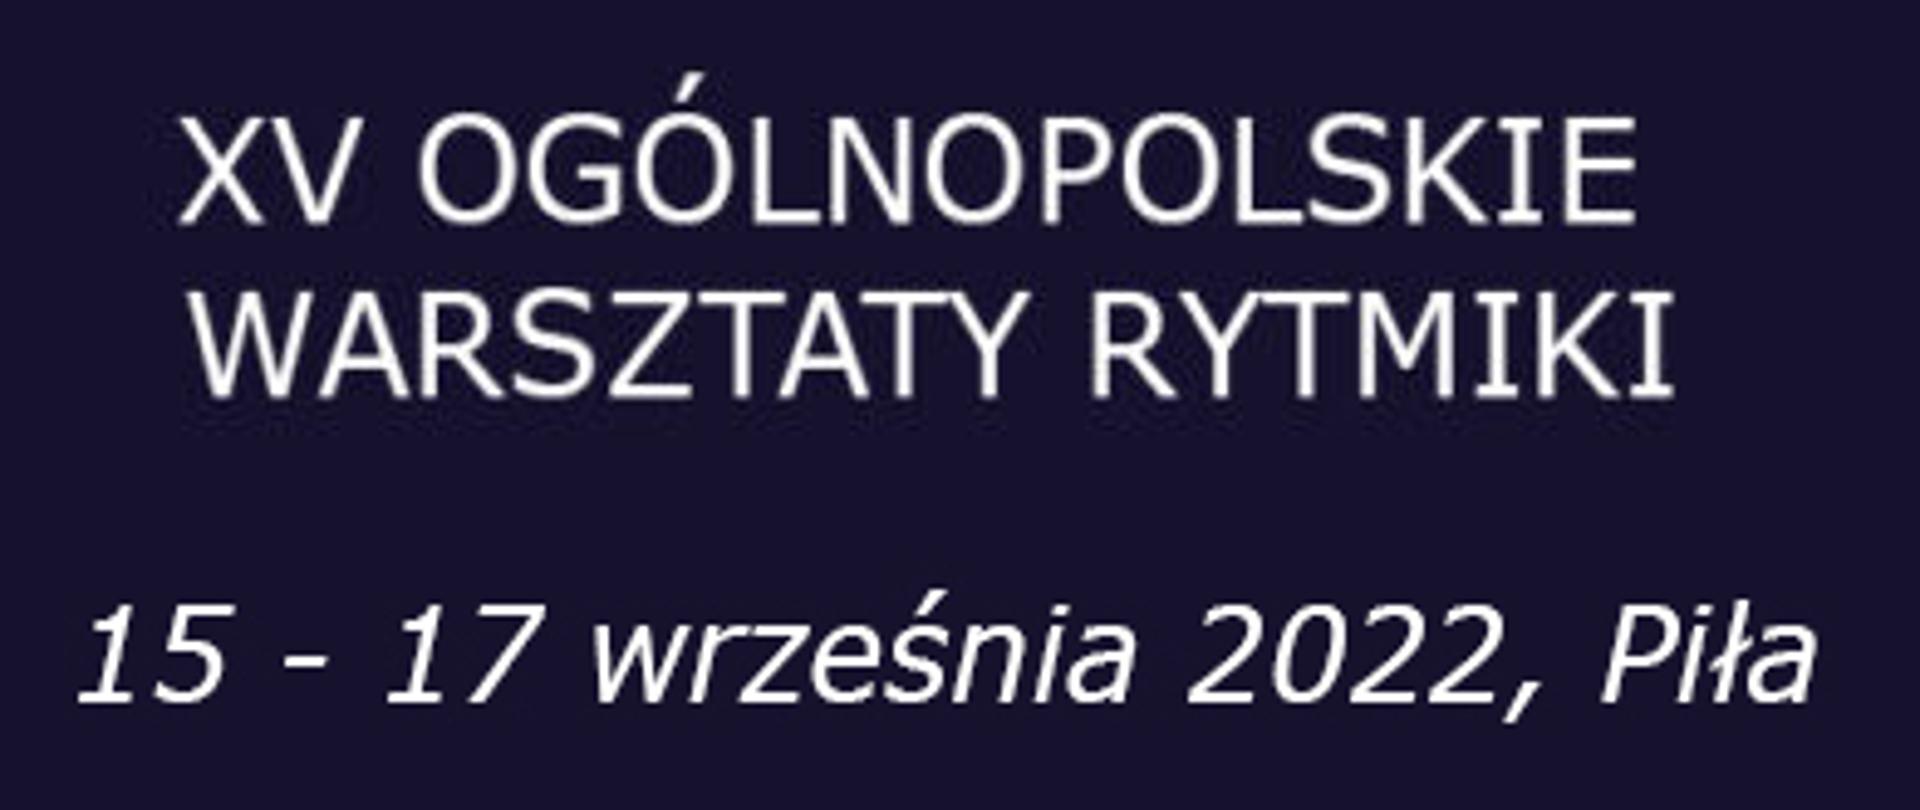 Biały napis na granatowym tle: 15-te Ogólnopolskie Warsztaty Rytmiki 15 - 17 września 2022, Piła